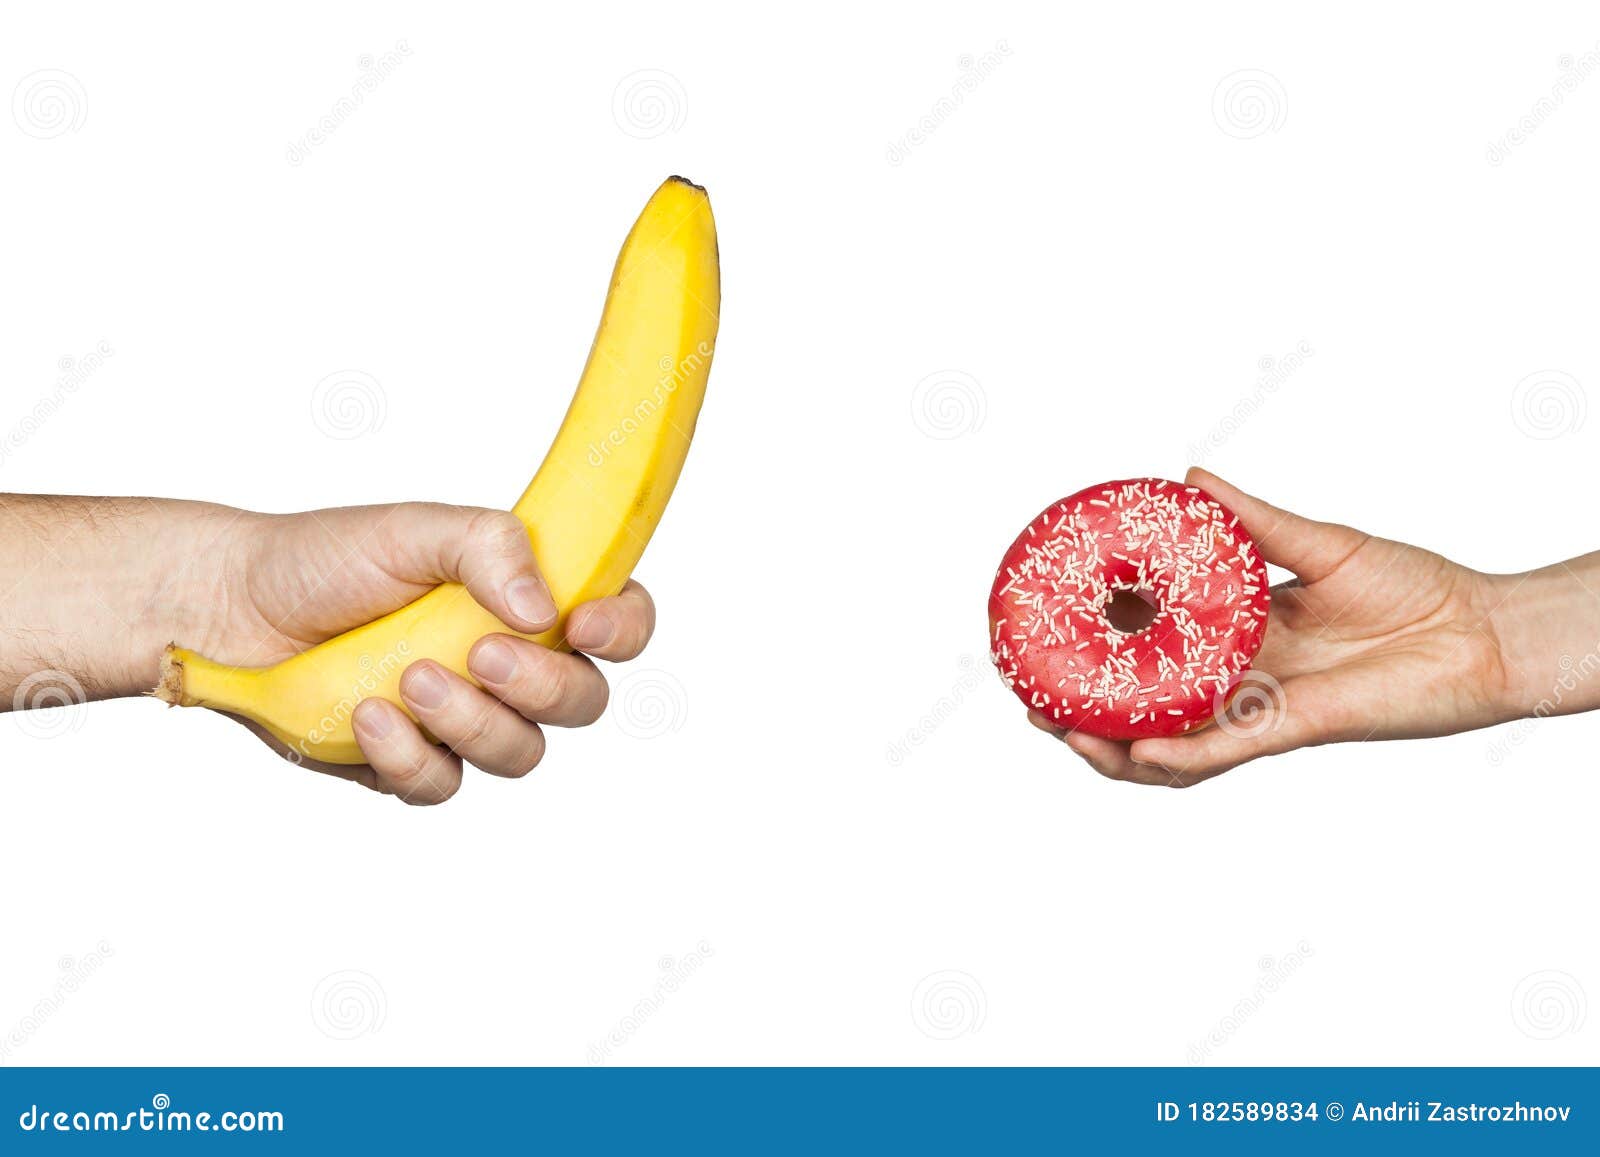 香蕉用鸡蛋拥抱一个橘子. 阴茎和阴道具有象征意义的概念. Copyspace 库存照片 - 图片 包括有 对象, 阴道: 212682038